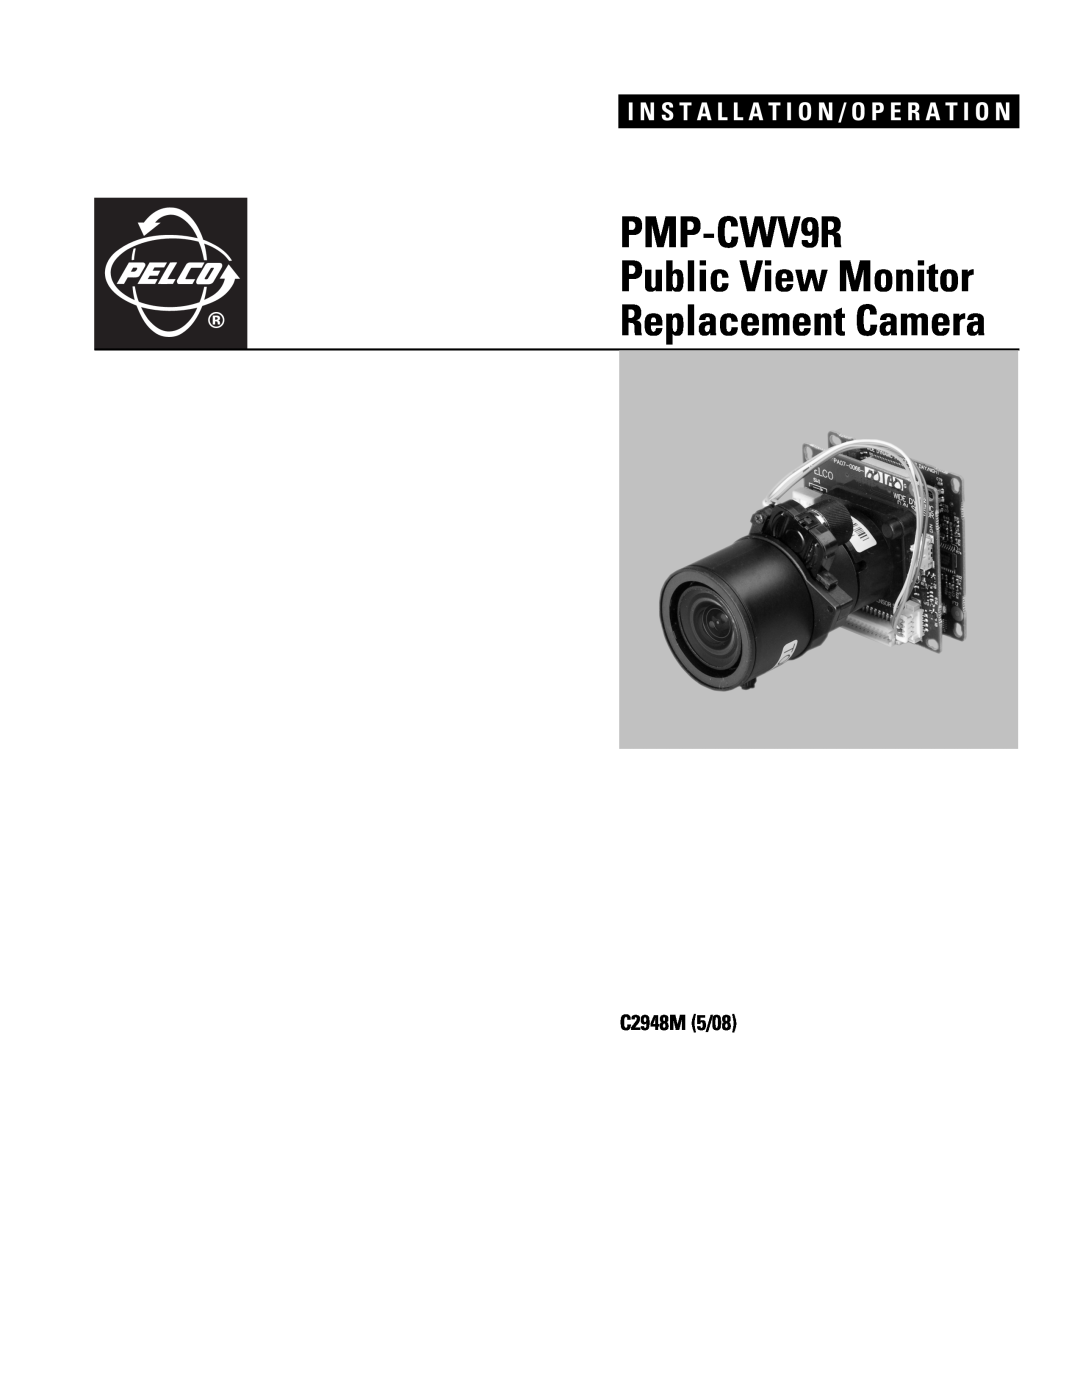 Pelco pmp-cwv9r manual PMP-CWV9R Public View Monitor Replacement Camera, I N S T A L L A T I O N / O P E R A T I O N 